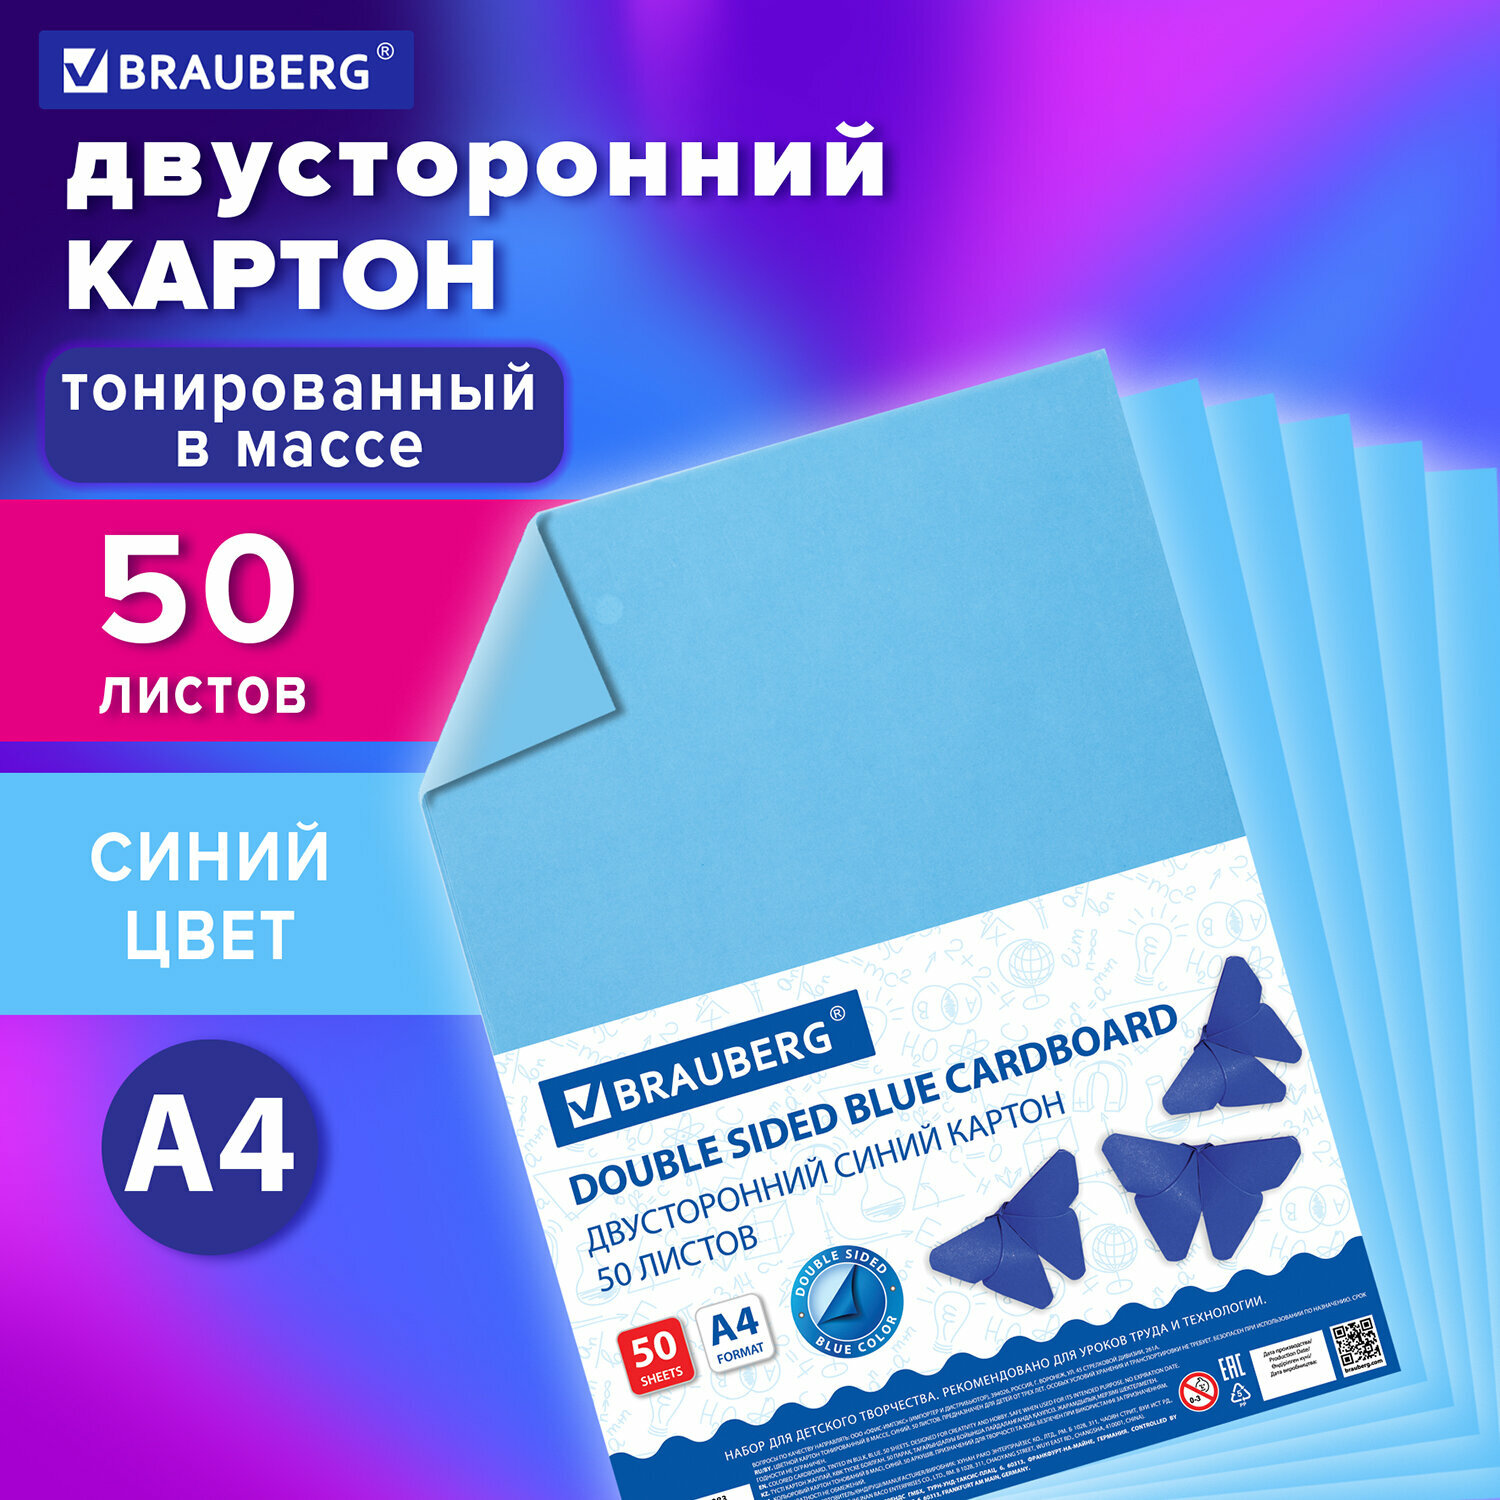 Цветной картон формата А4 тонированный в массе для творчества, набор 50 листов, синий, 220 г/м2, Brauberg